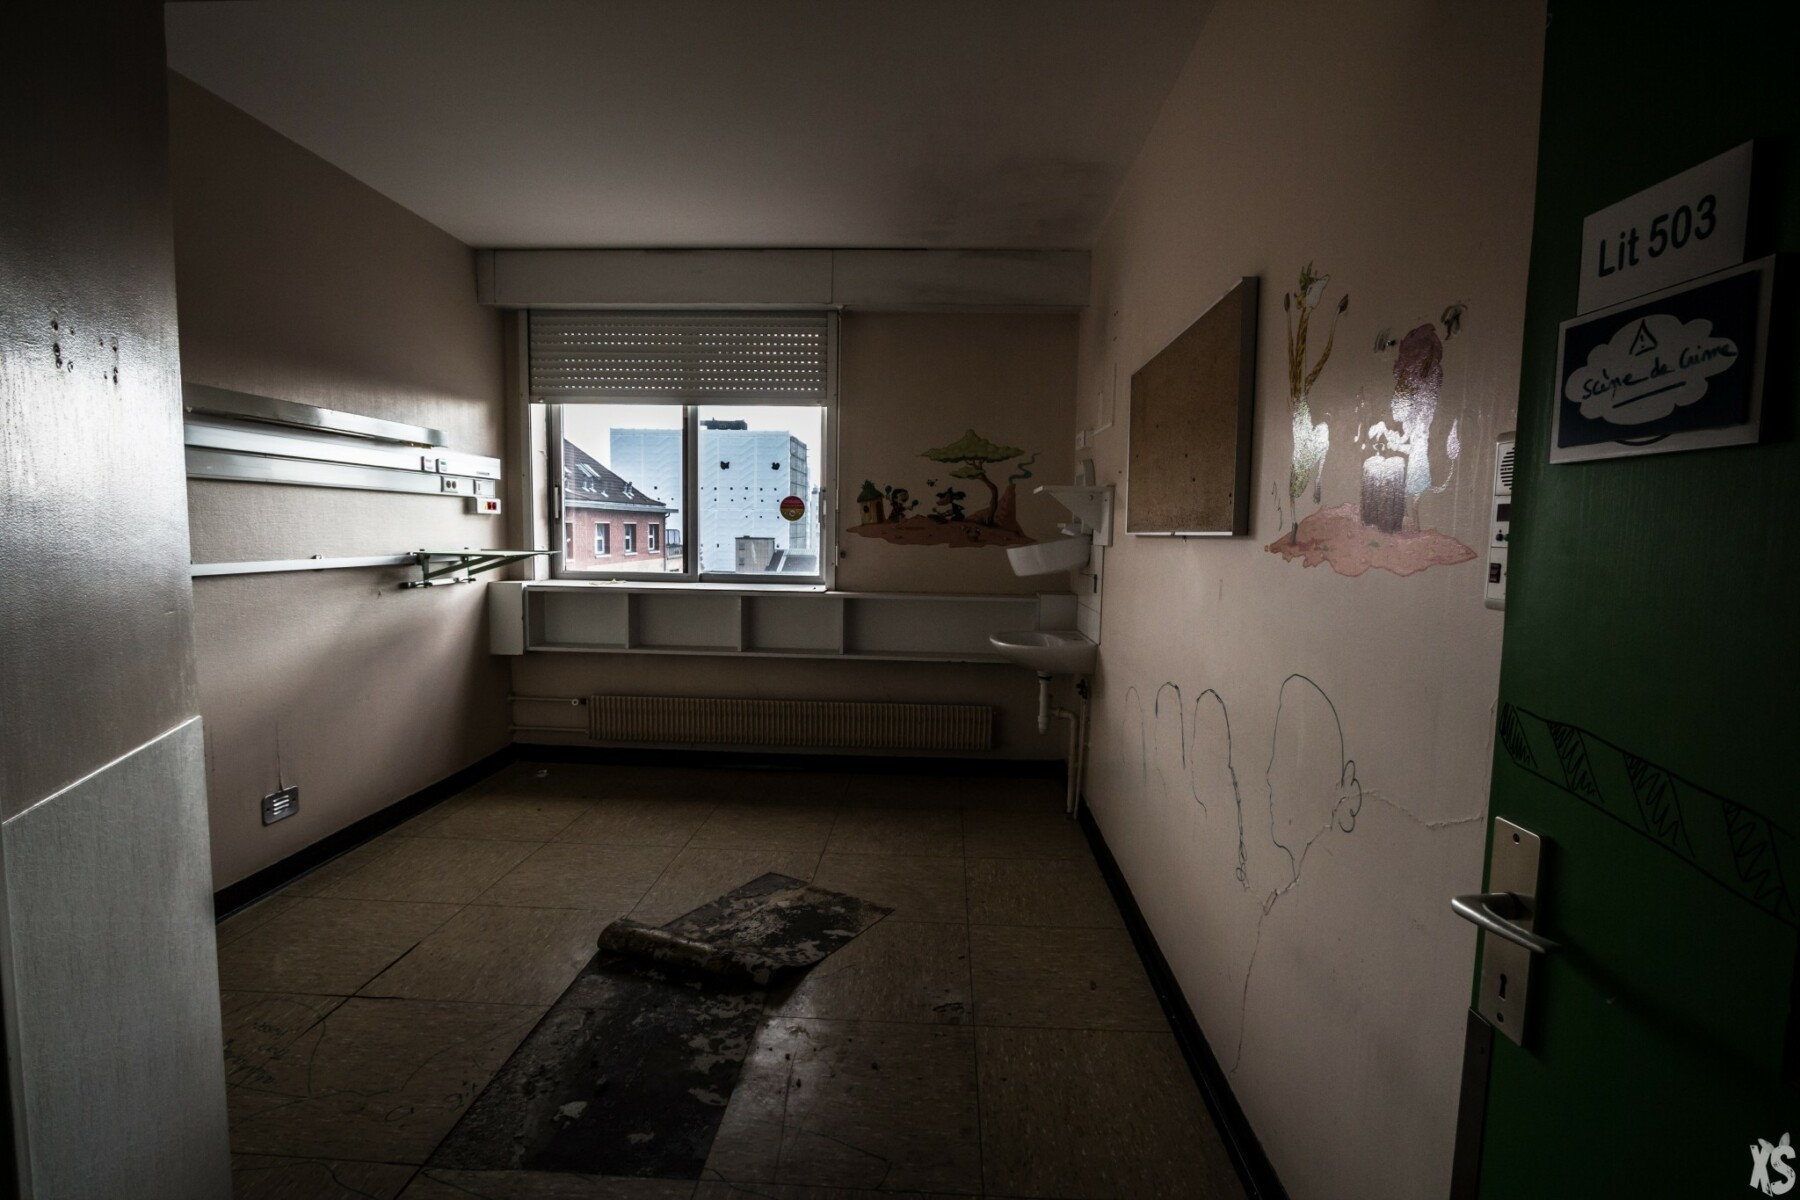 Hôpital abandonné à Paris